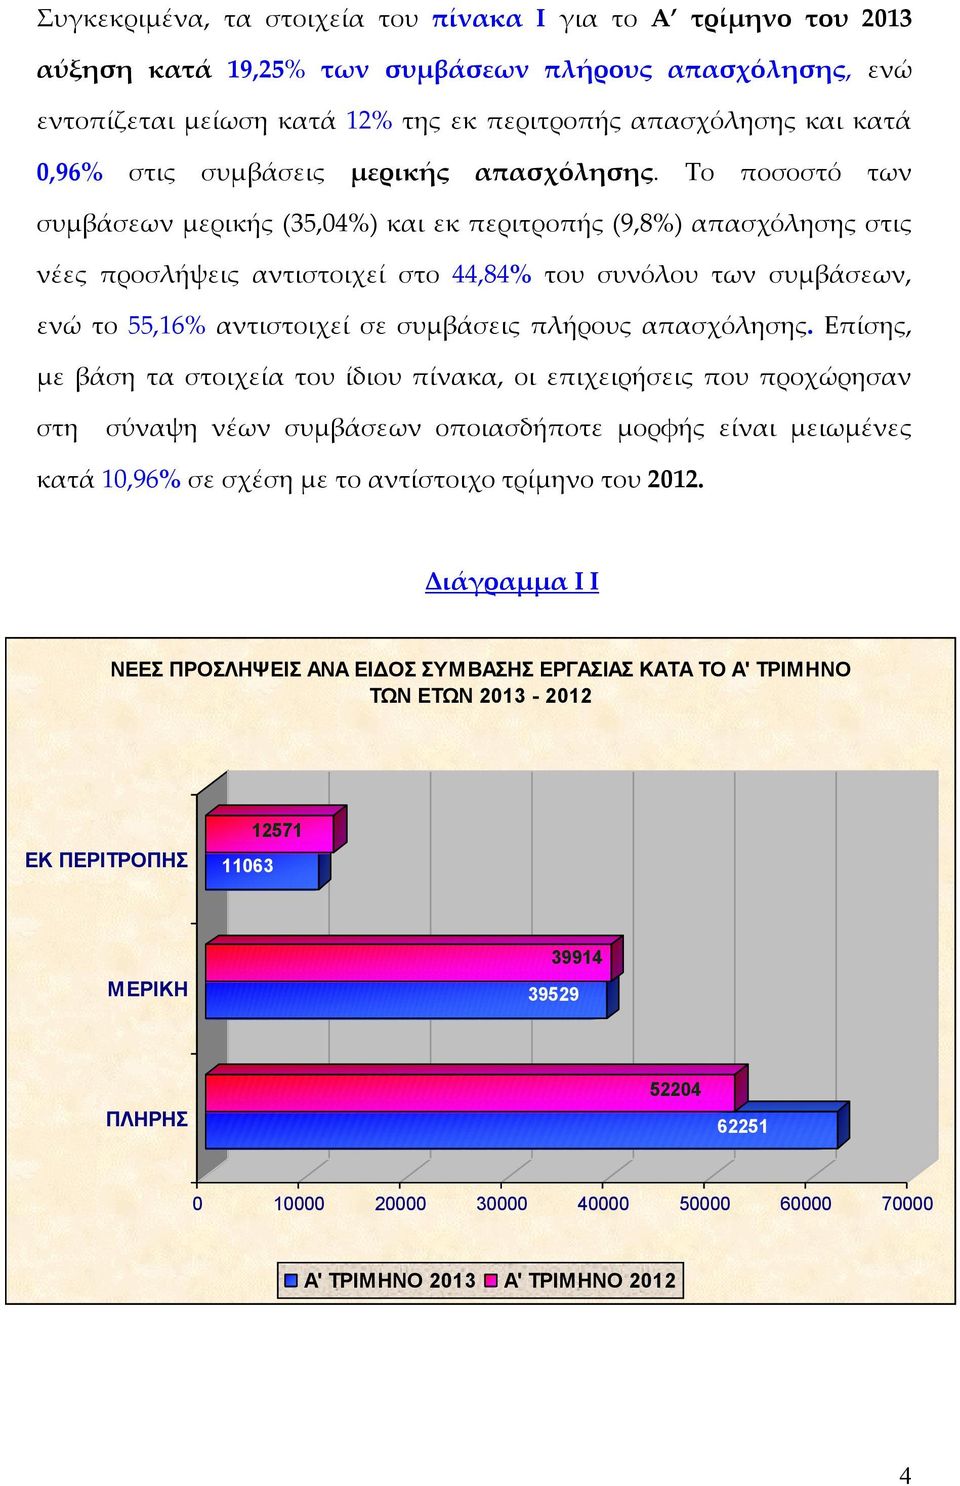 Το ποσοστό των συμβάσεων μερικής (35,04%) και εκ περιτροπής (9,8%) απασχόλησης στις νέες προσλήψεις αντιστοιχεί στο 44,84% του συνόλου των συμβάσεων, ενώ το 55,16% αντιστοιχεί σε συμβάσεις πλήρους